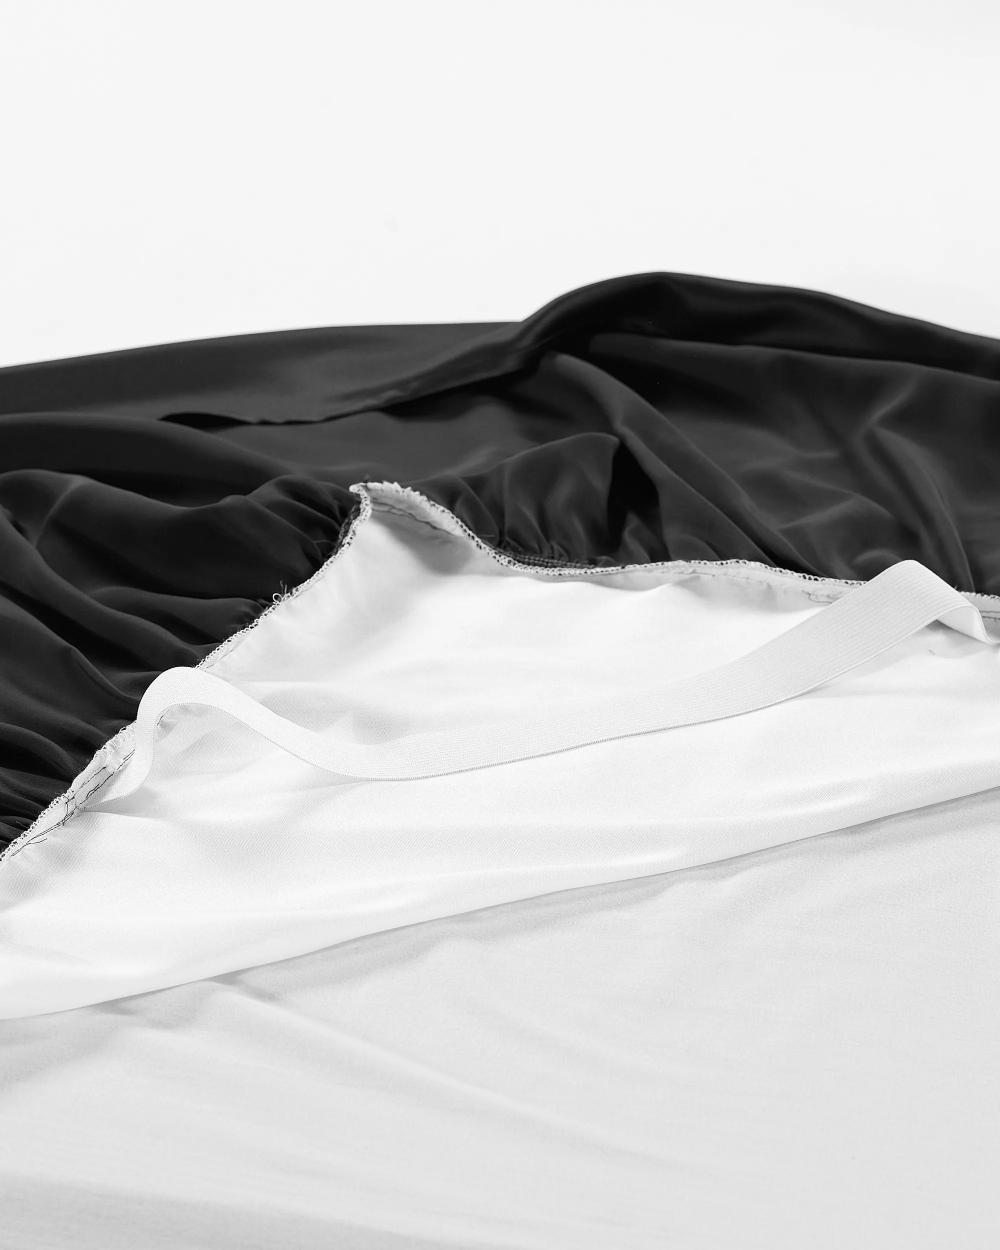 Bedding Luxurious & Ultra Soft 22 Momme Silk Bedskirt King Queen Twin